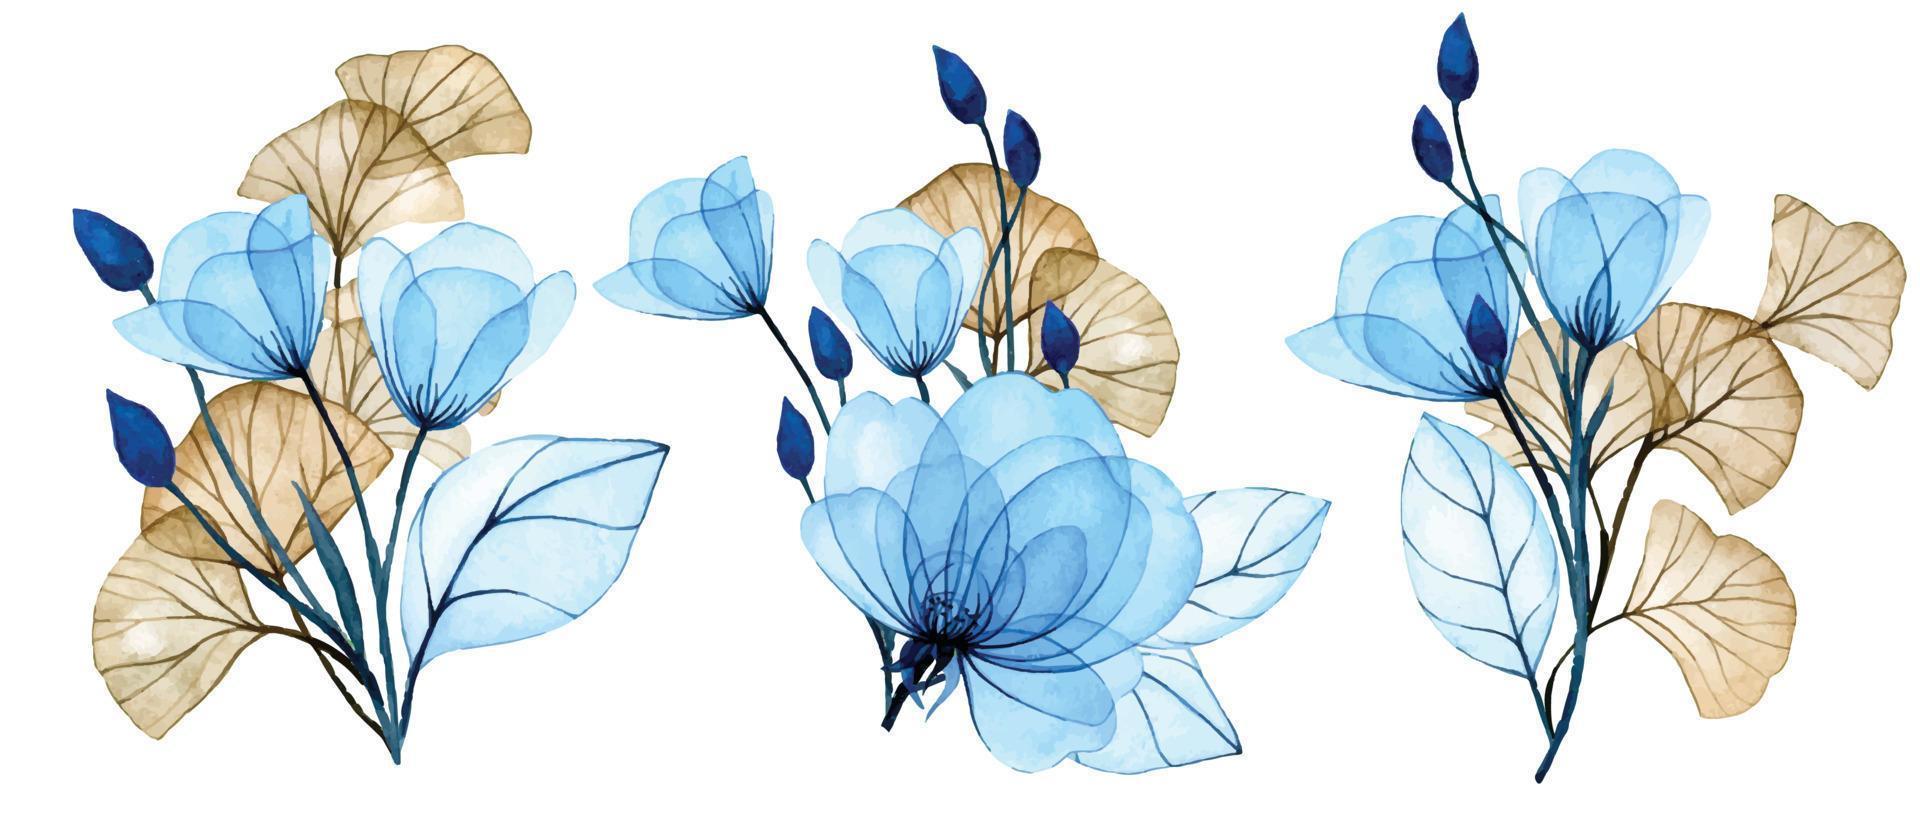 aquarellillustration. Reihe von Blumensträußen aus transparenten Blumen. blaue Blüten und Ginkgoblätter. zarte Zeichnung, Röntgen vektor